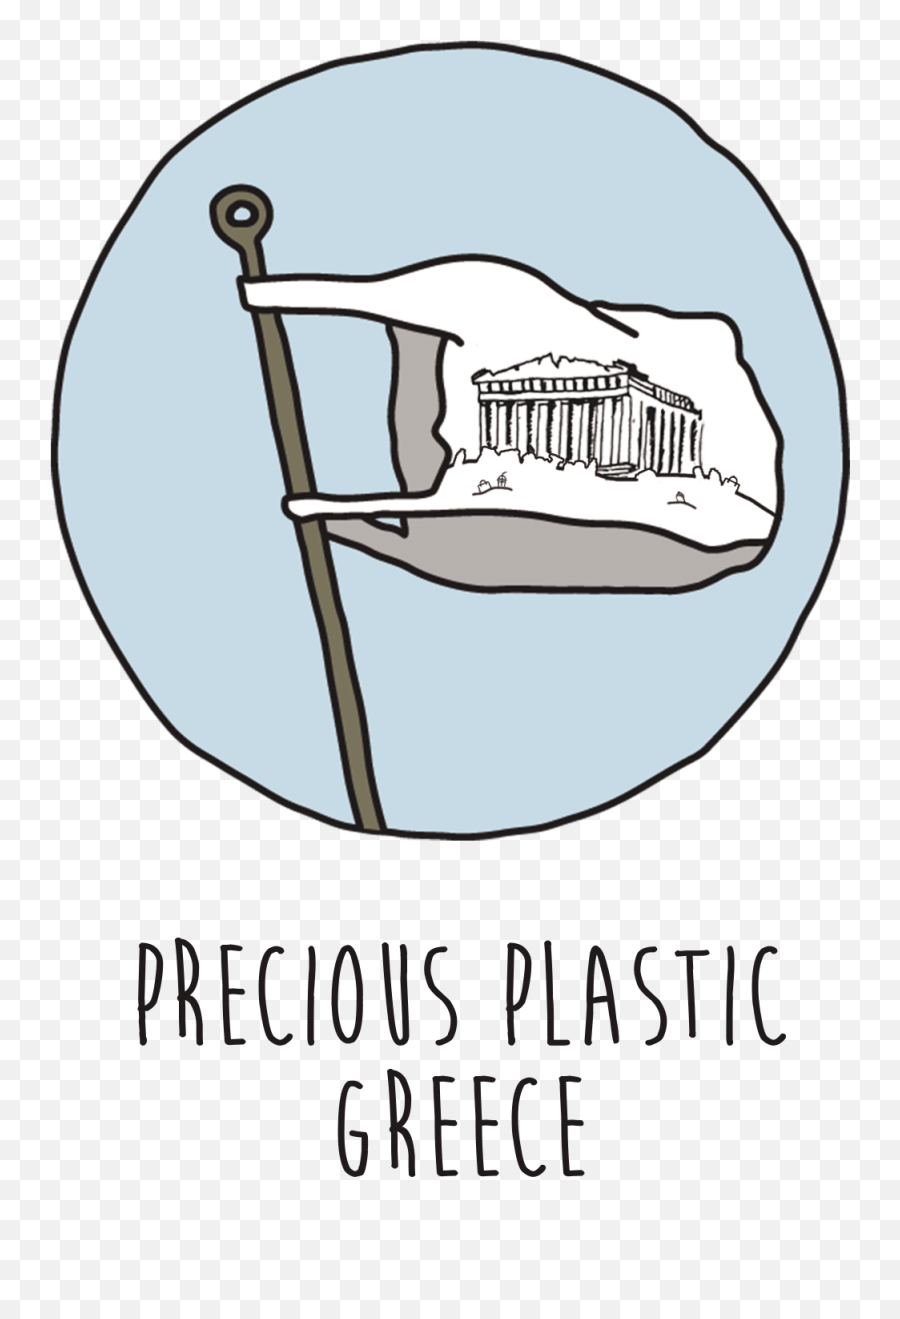 Google Plus Logo Png Transparent - Precious Plastic Greece,Google Transparent Background